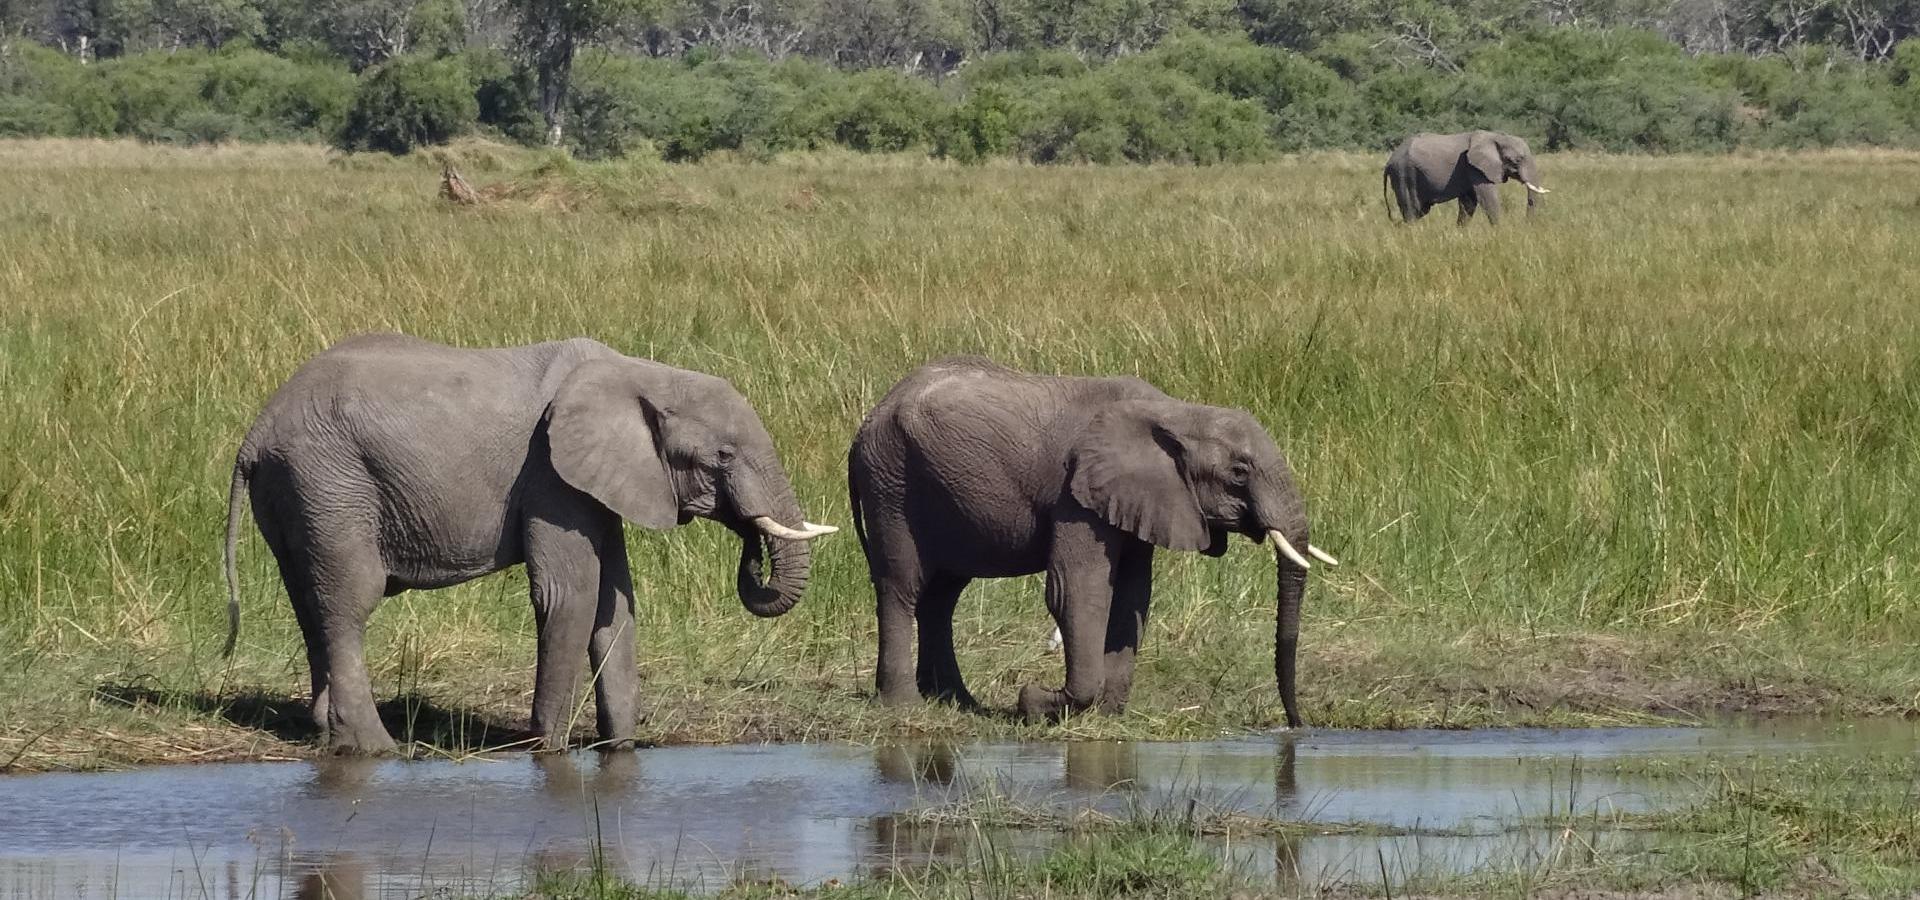 Machen Sie aufregende Tierbeobachtungen im facettenreichen Naturparadies des Okavango Deltas in Botswana